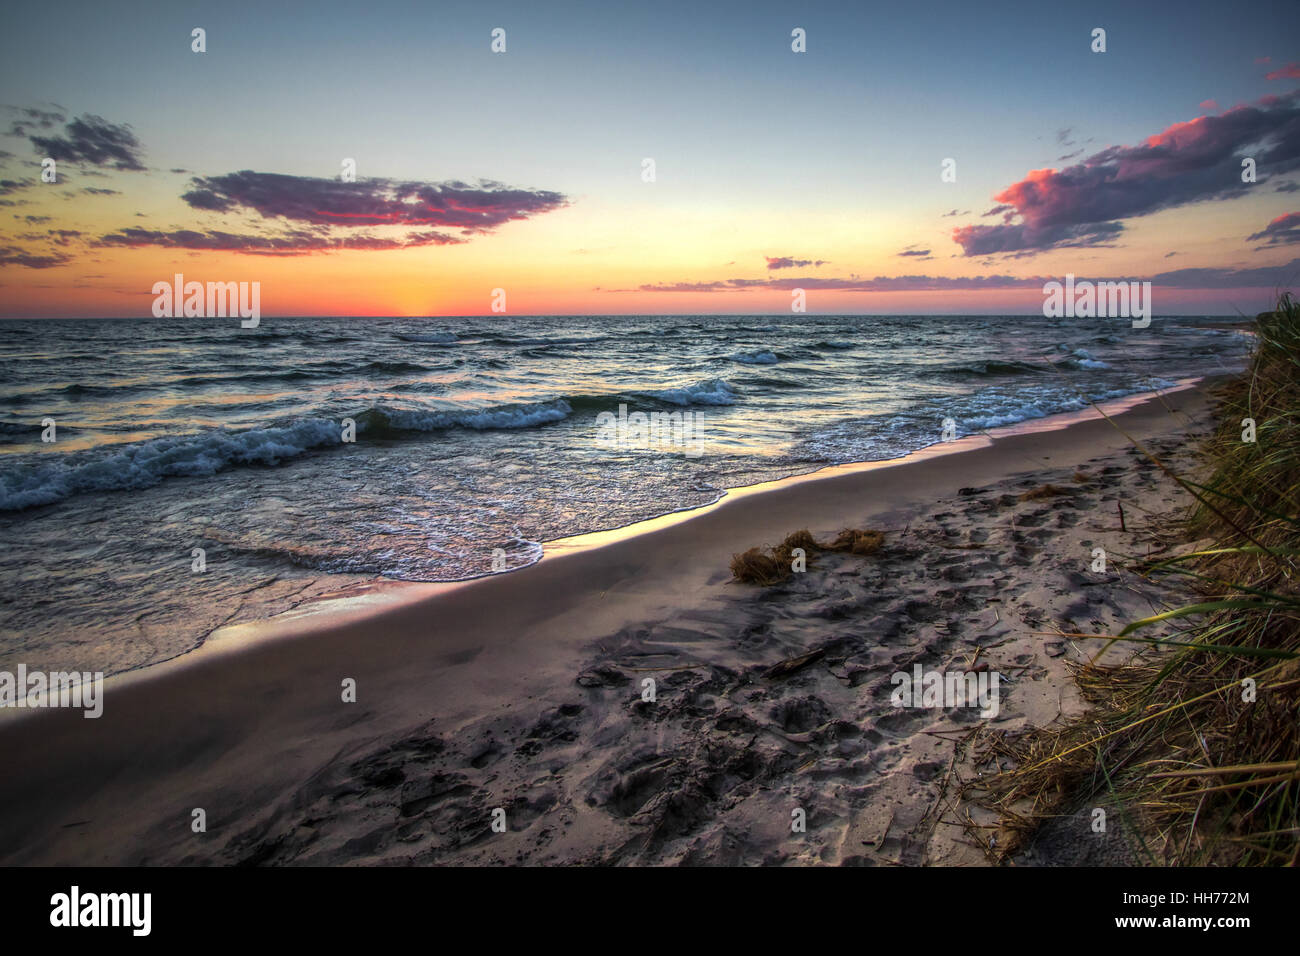 Summer Beach Sunset Panorama. Le coucher du soleil sur une large plage de sable du lac Michigan sur le littoral des Grands Lacs. Muskegon, Michigan Banque D'Images